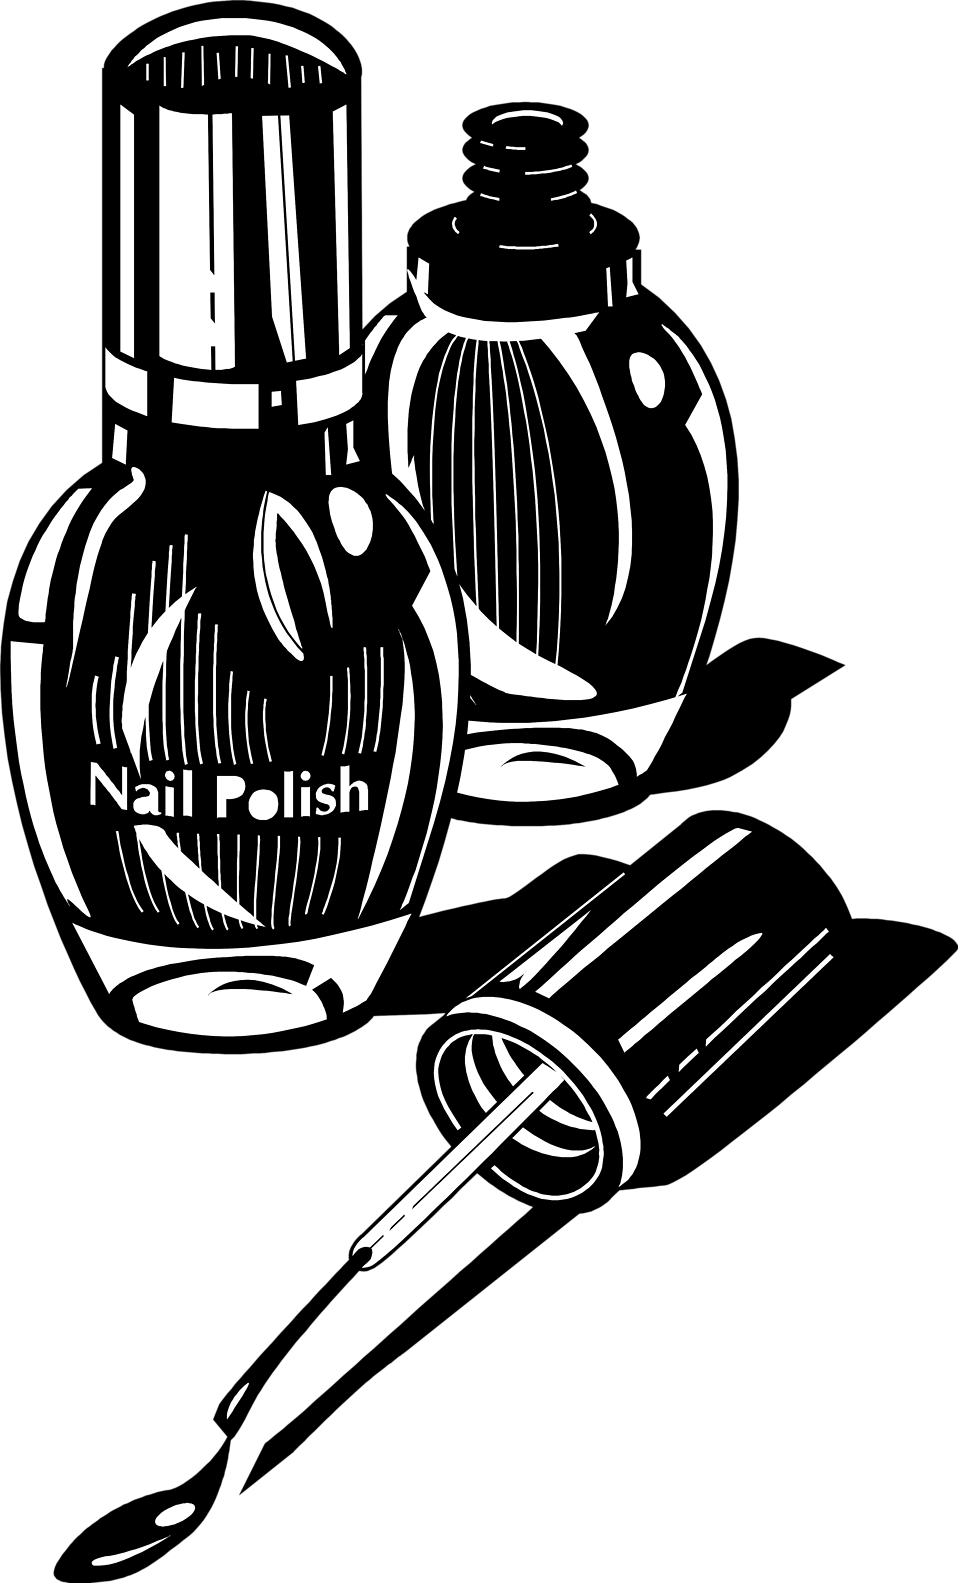 Nail Polish - Nail Polish Black And White (958x1583)